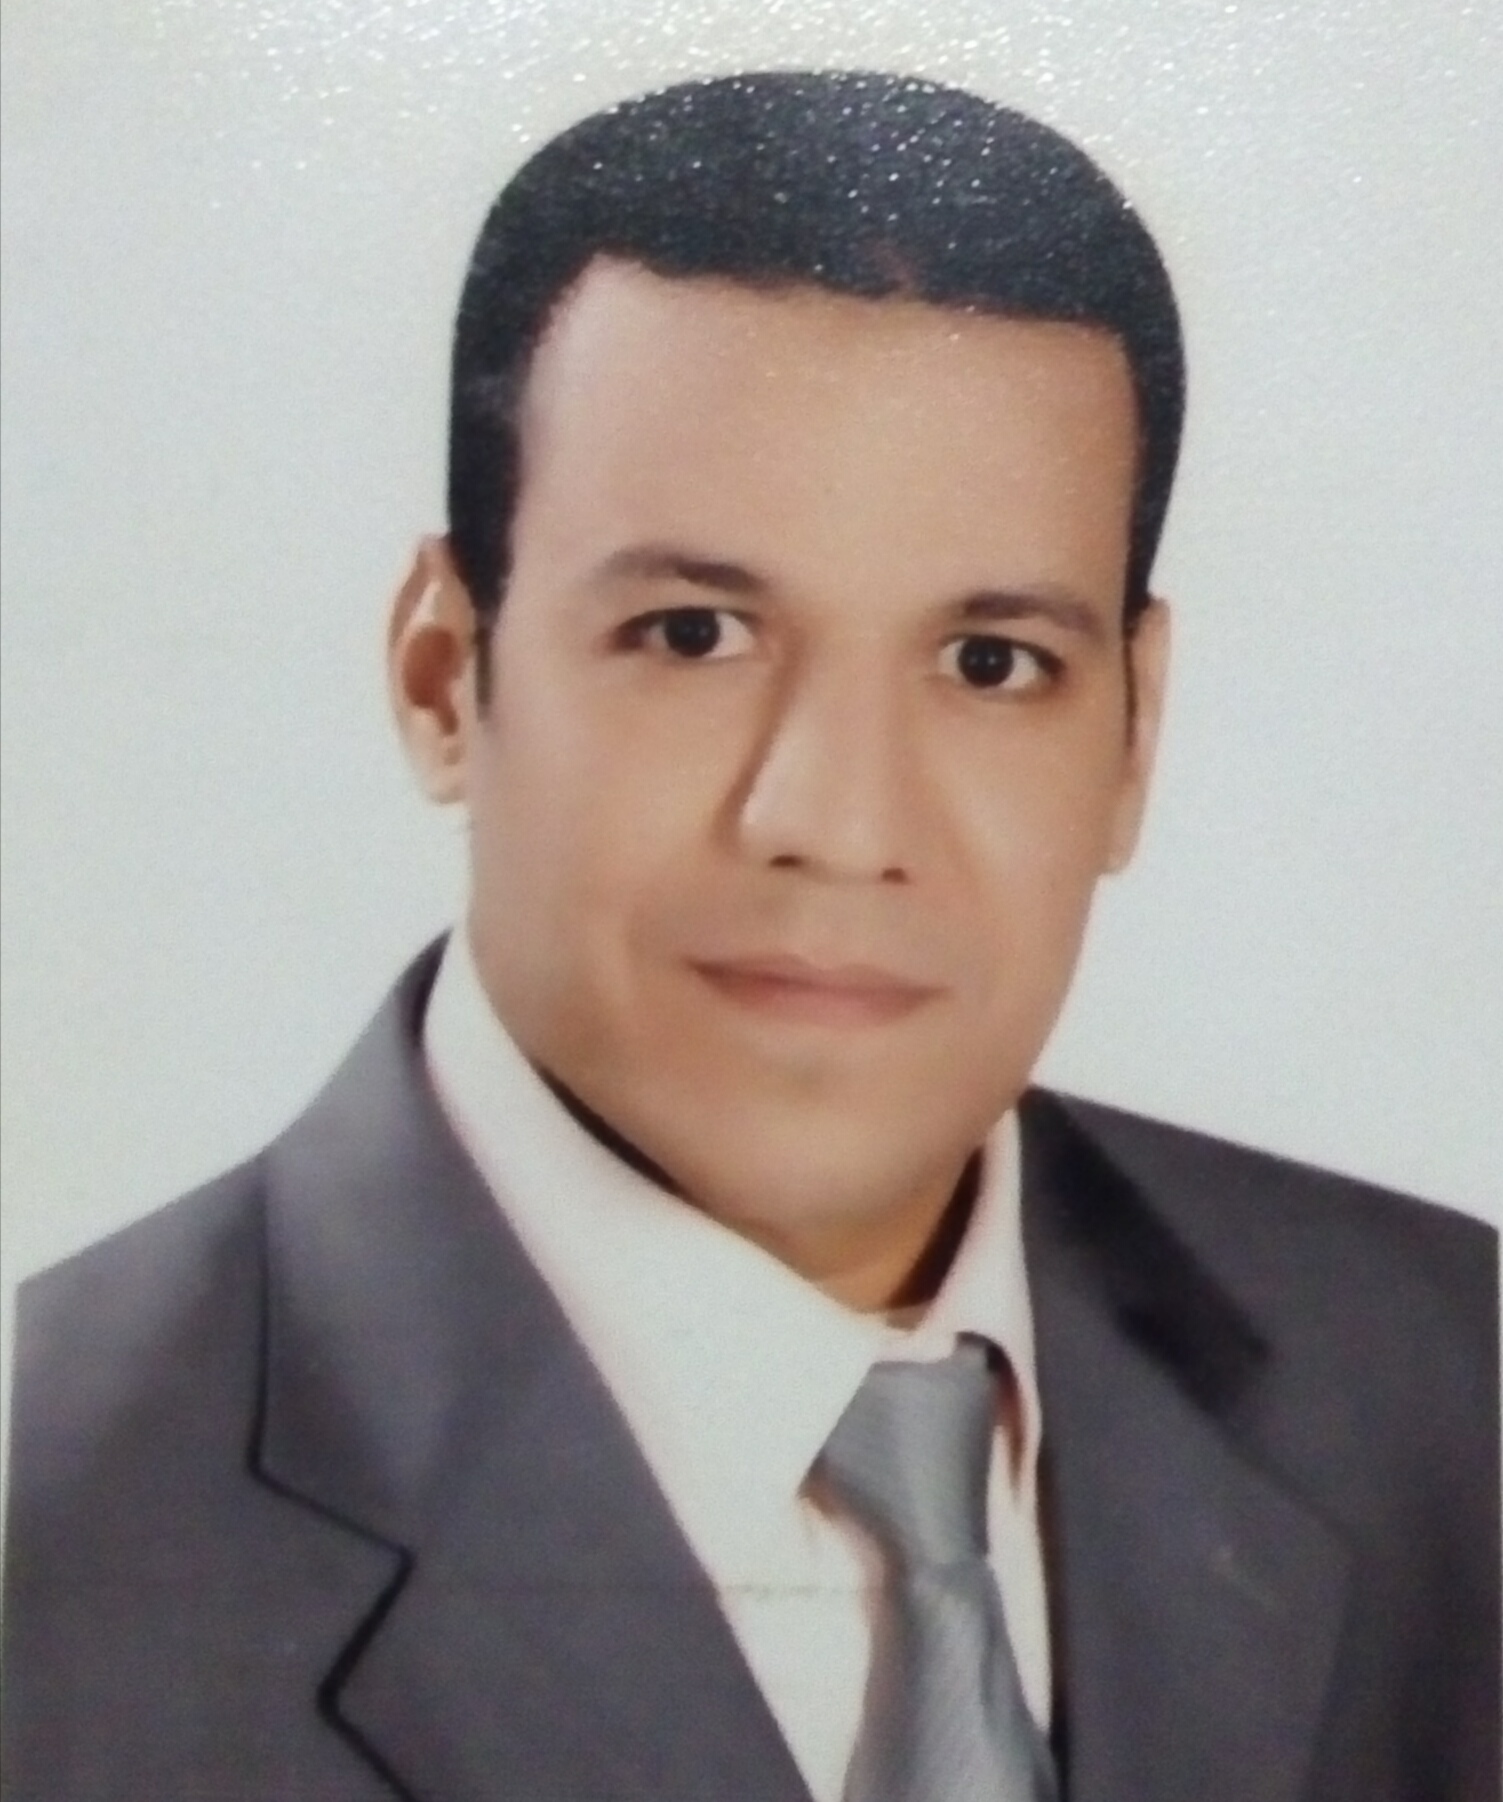 Abdel-Fattah Ali Mohy Eldeen Mohamed